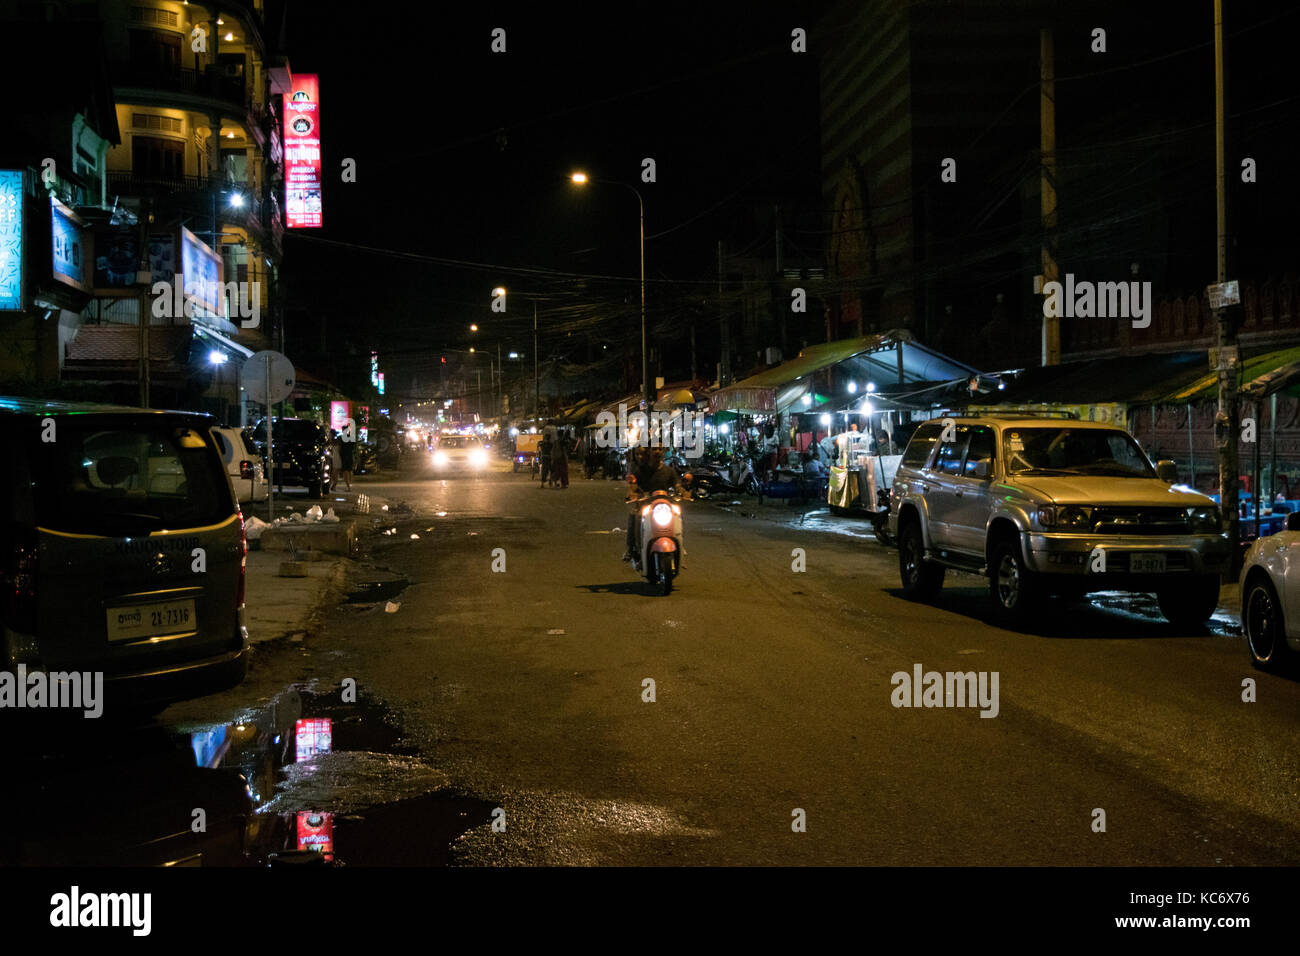 Straße in Phnom Penh, parallel zur Siswath Kai - Riverfront. Straße hat keinen Bürgersteig, Motorräder schmutzig und Straßenhändler auf einer Seite. Kambodscha Südostasien Stockfoto